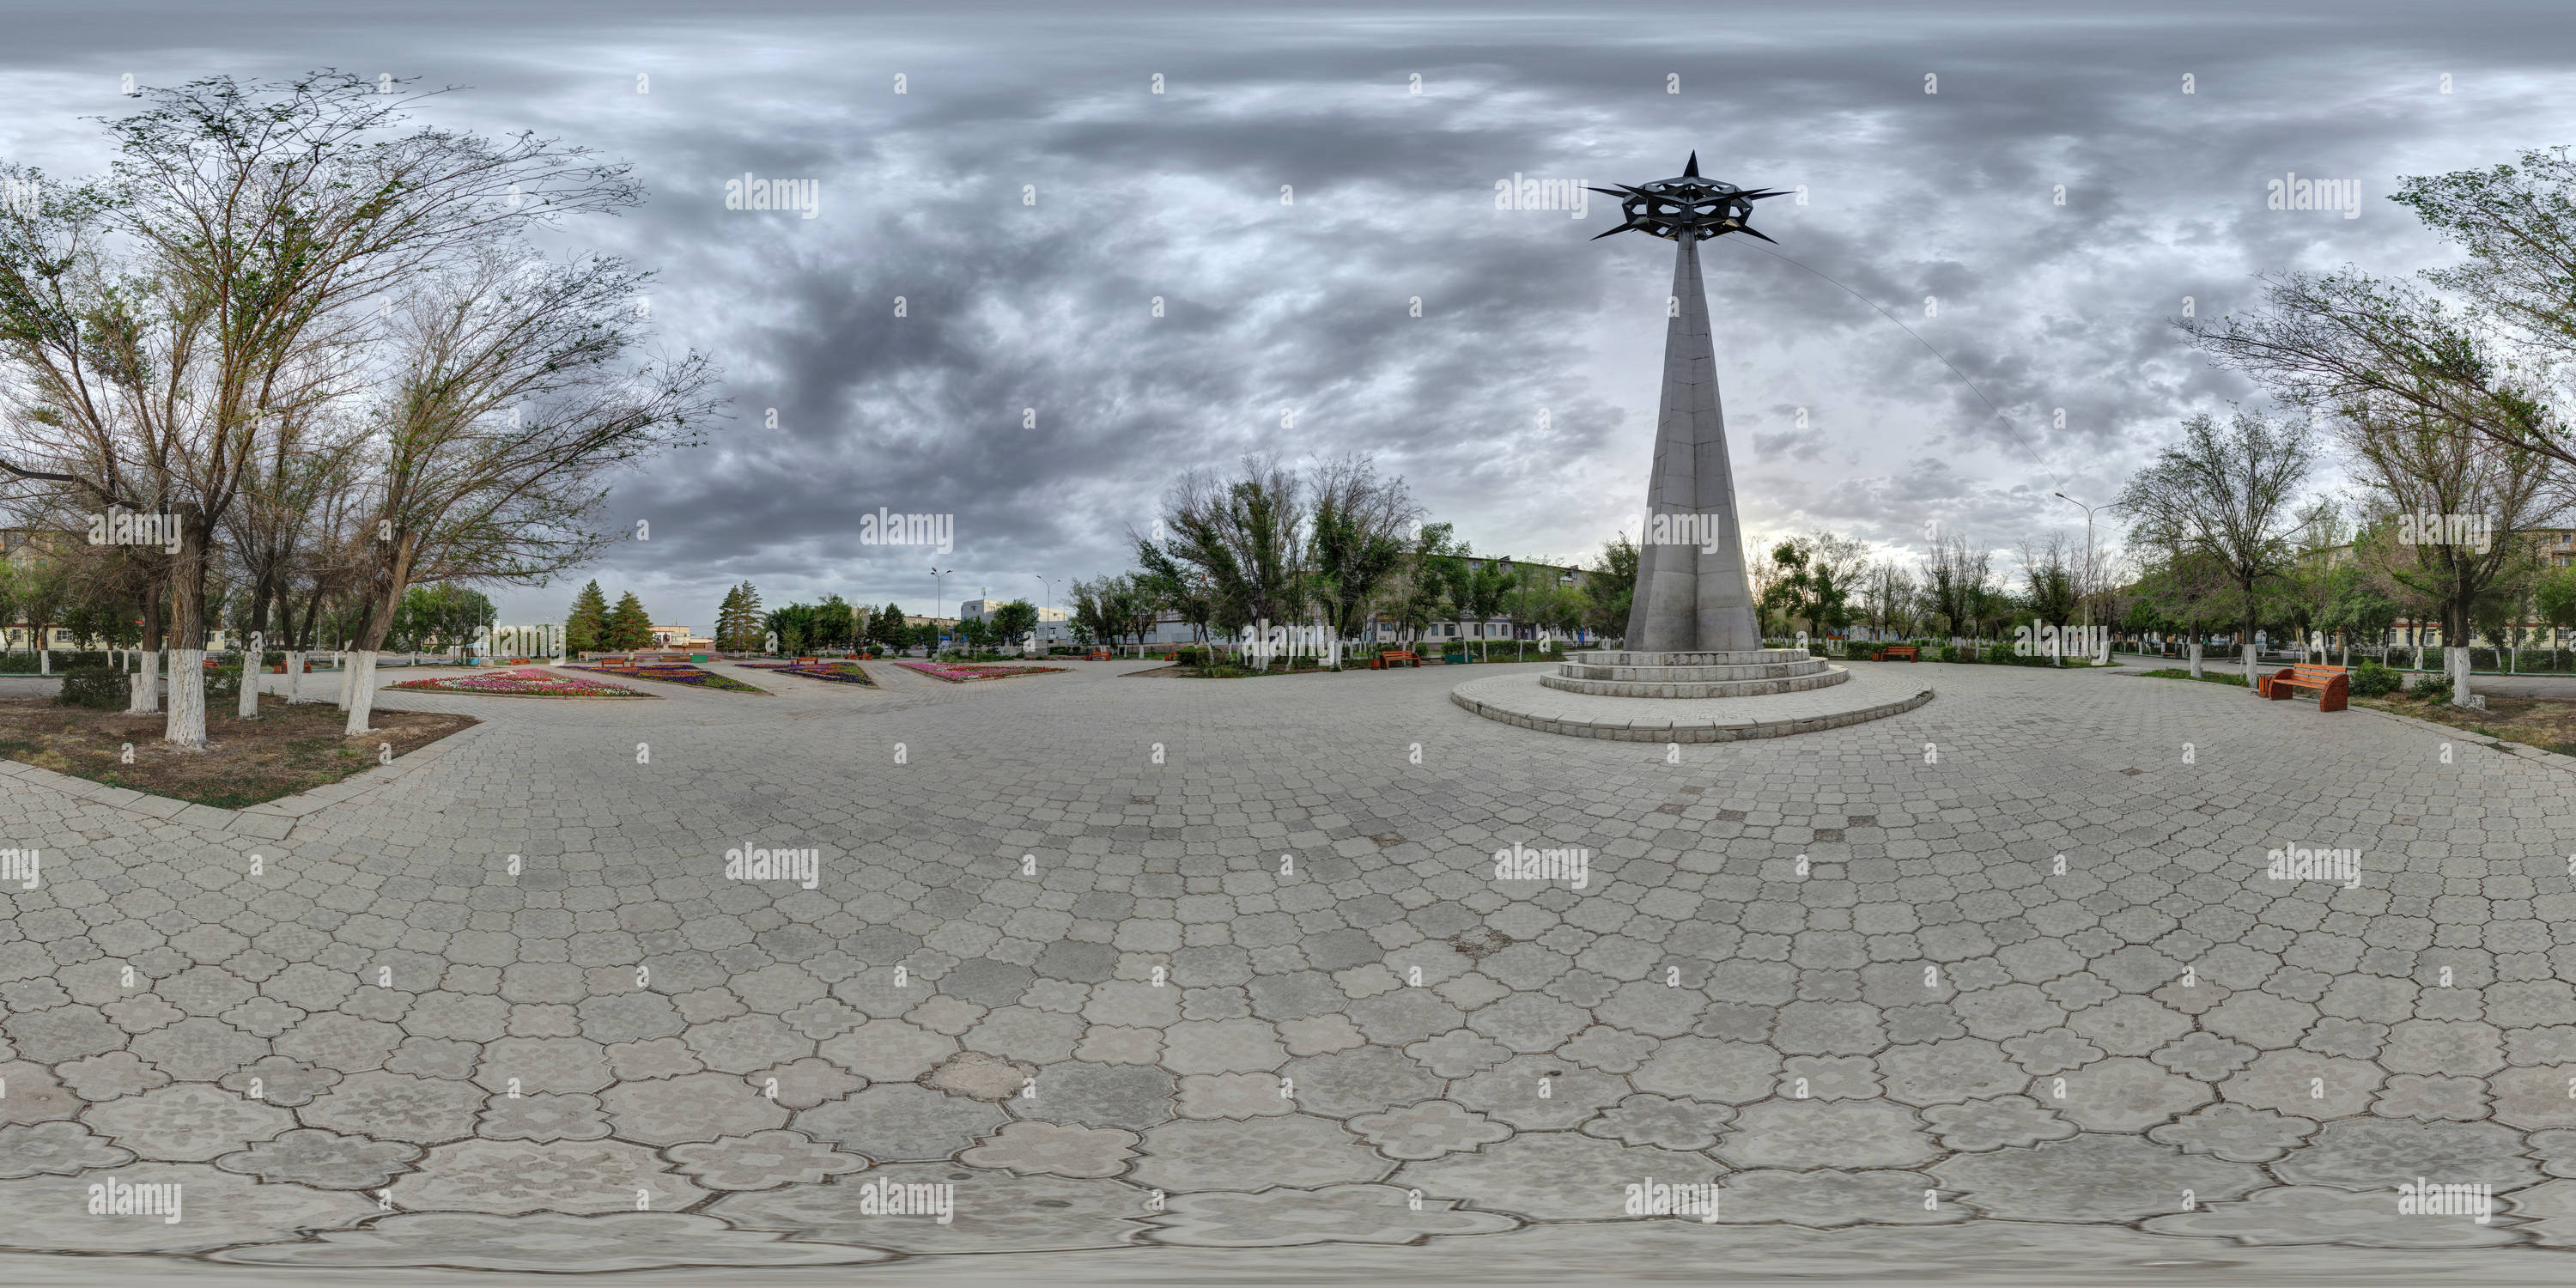 360 degree panoramic view of Monument 'Space', Zhezkazgan